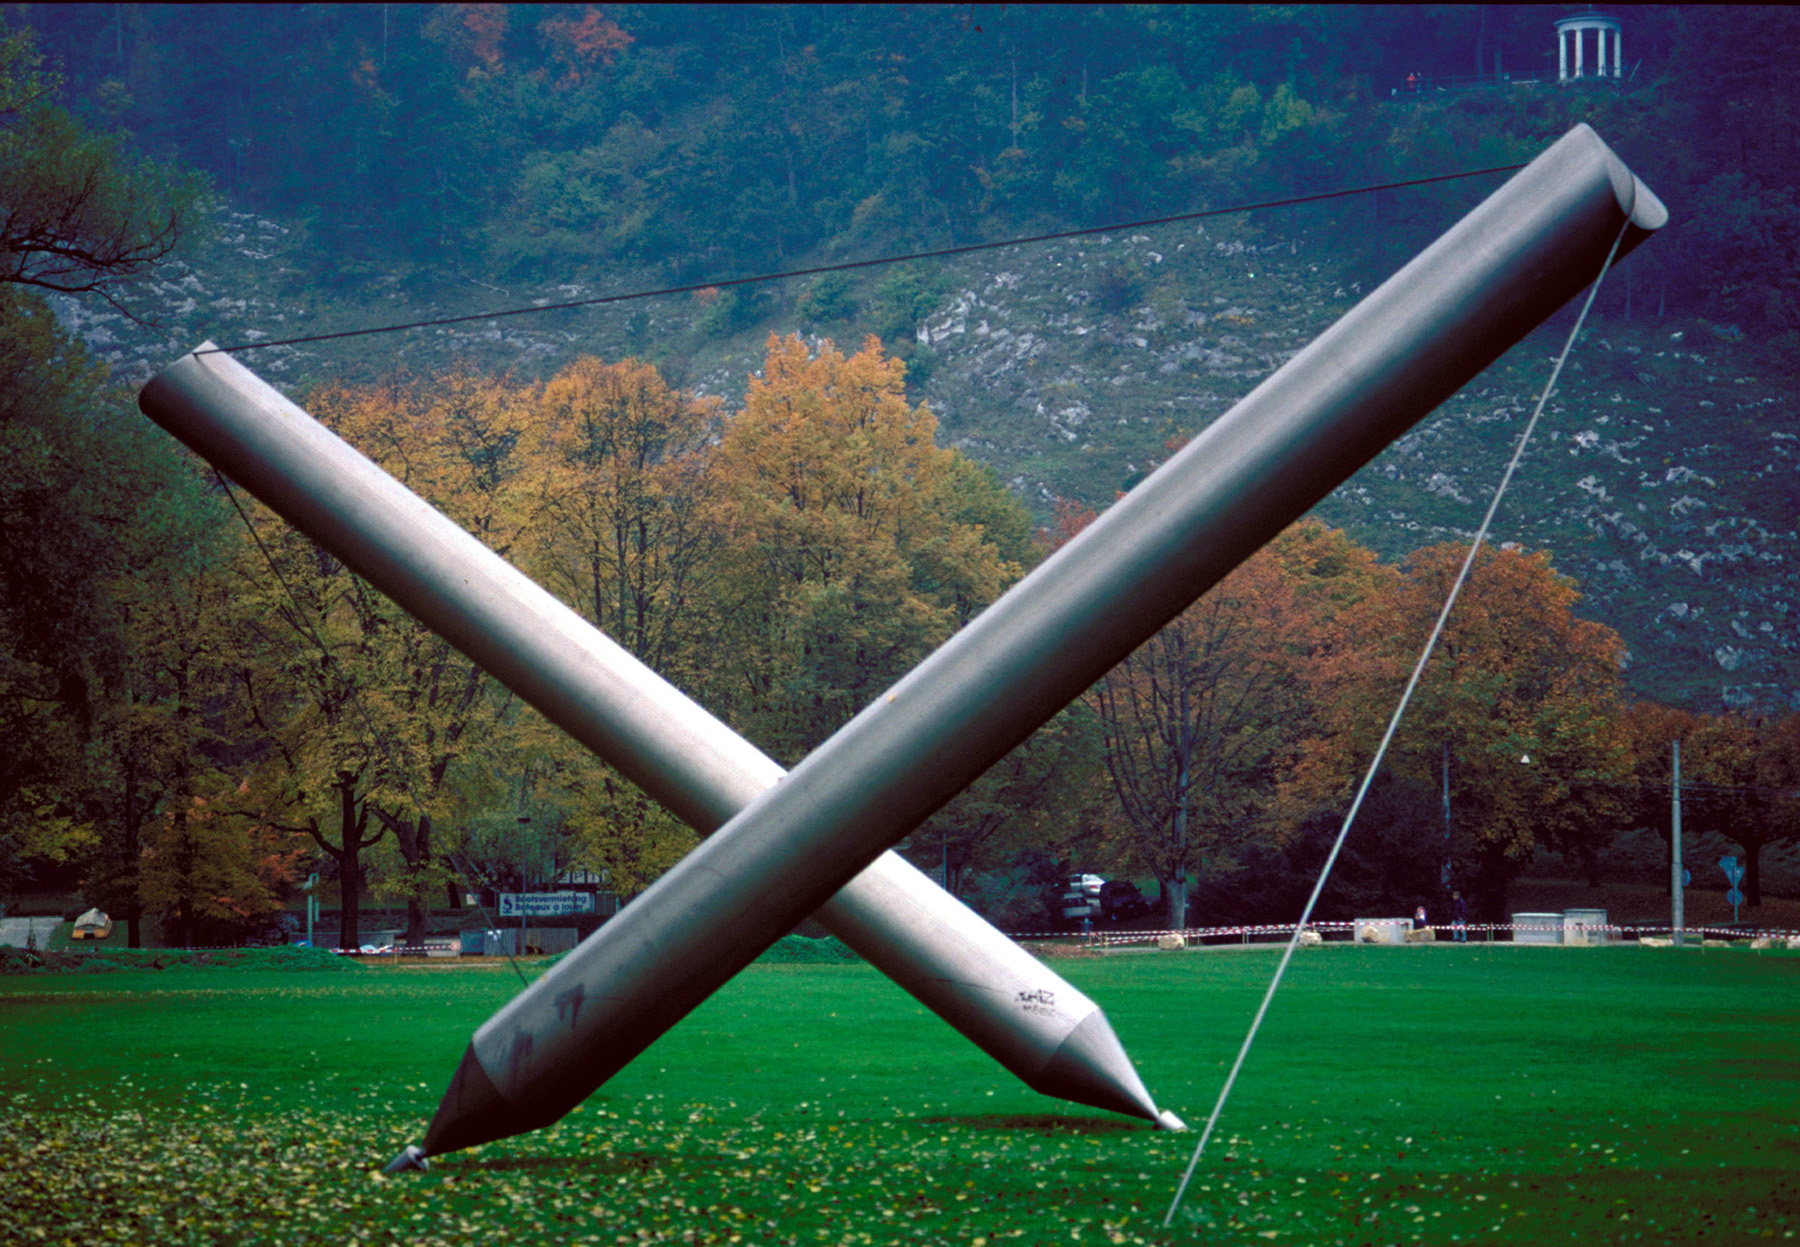 Auf einer Wiese ist eine grosse Skulptur aufgestellt. Dabei handelt es sich um zwei metallene Stifte, die aufgestellt sind, indem sie mit einem Draht gespannt sind. Die Stiftspitzen sind dabei die Berührungspunkte zum Boden. 